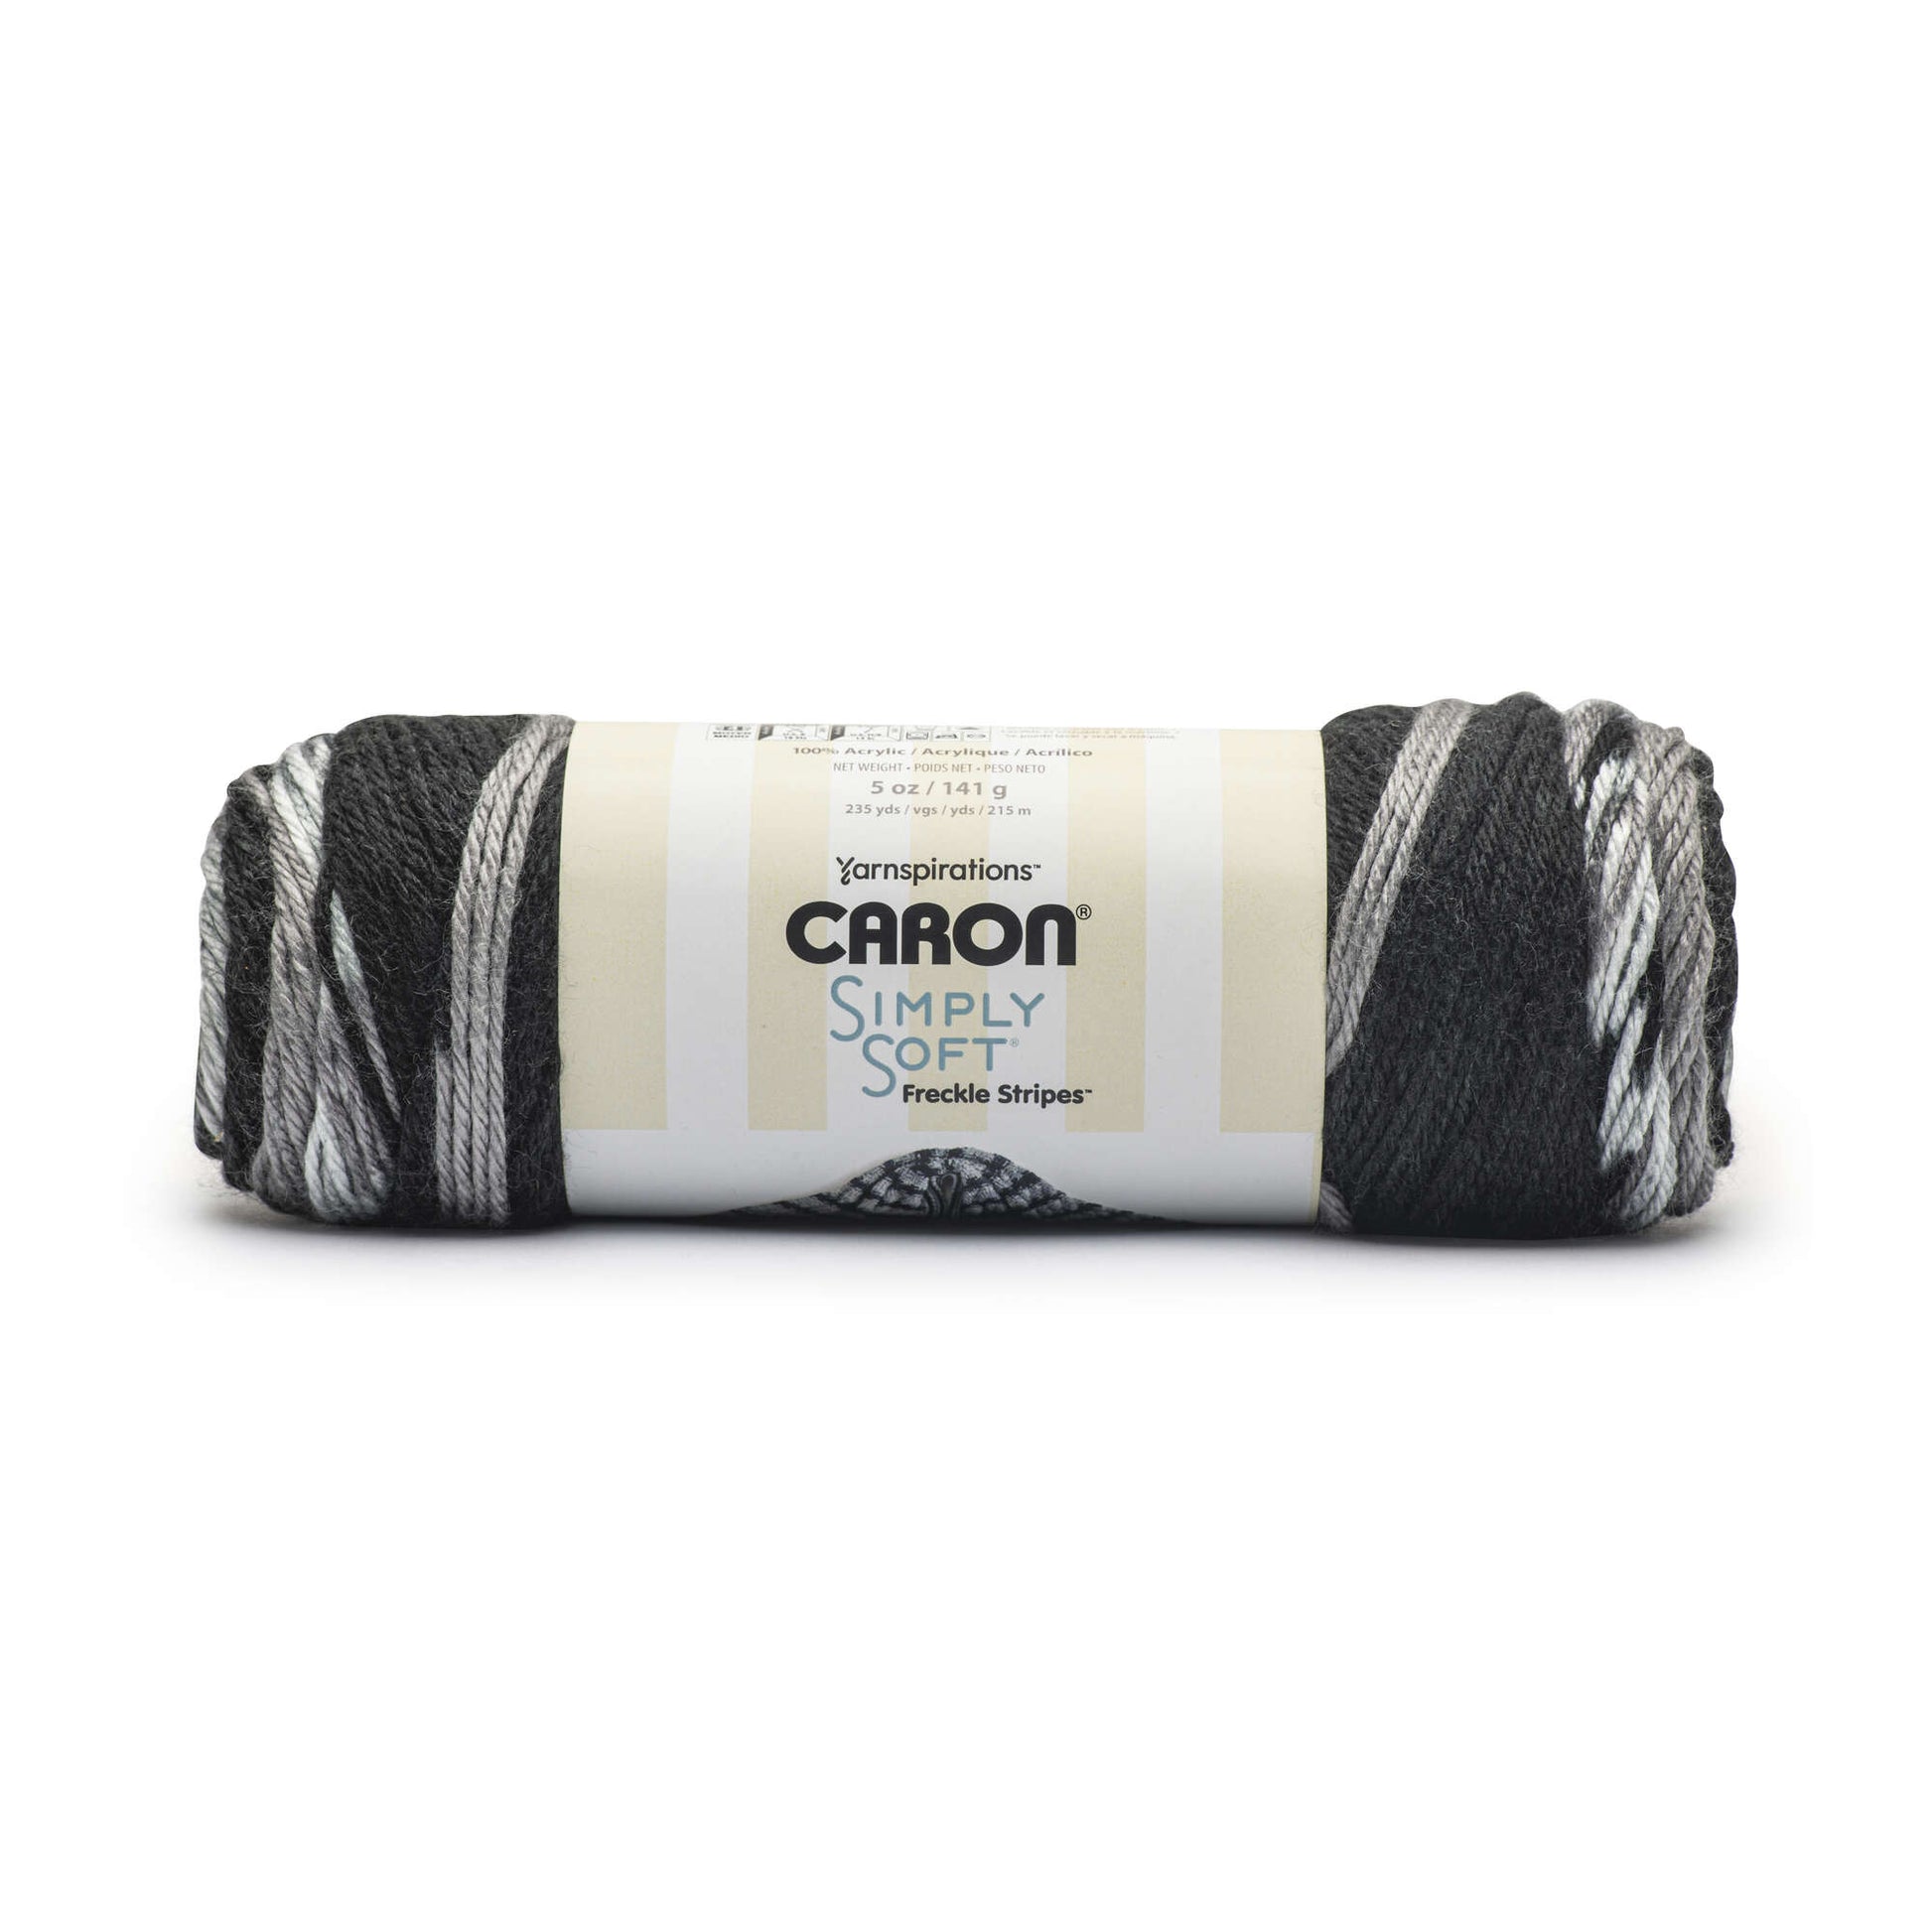 Caron Simply Soft Freckle Stripes Yarn